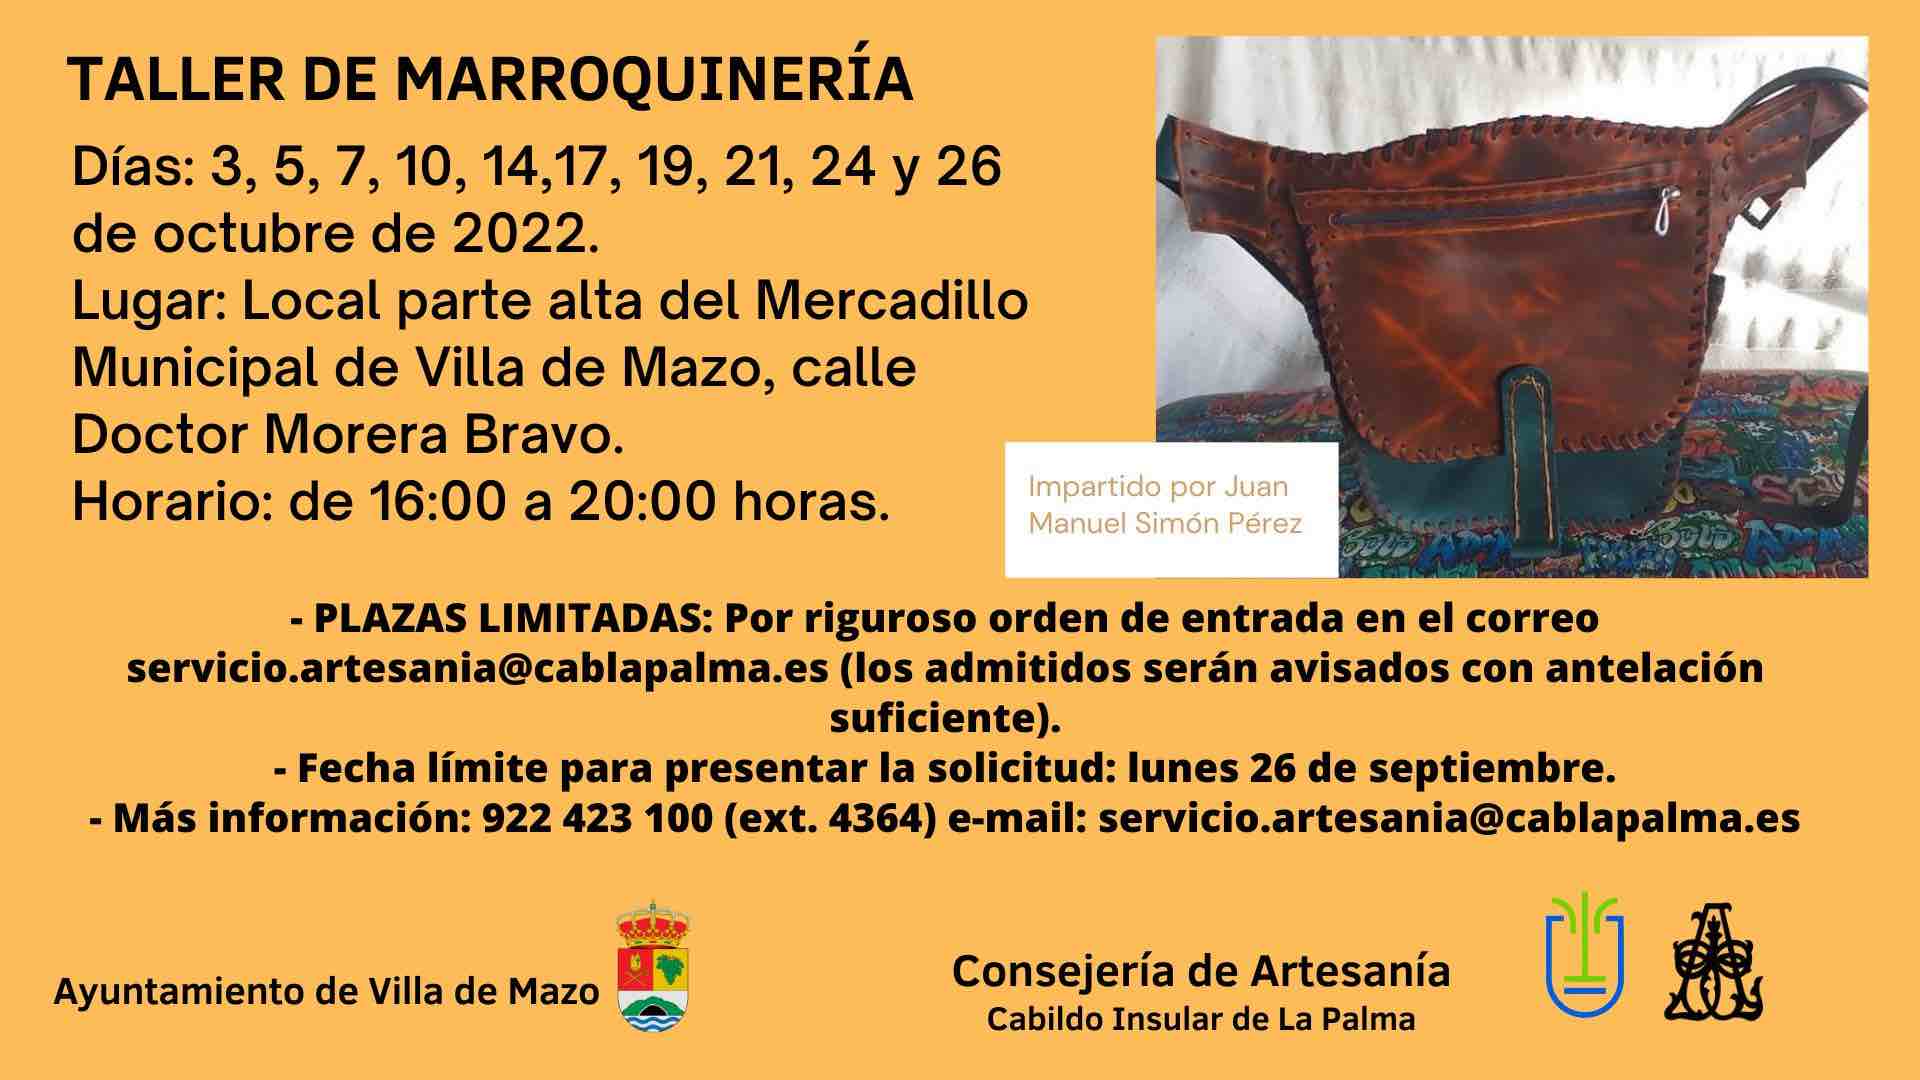 Artesanía organiza un taller de marroquinería el mes de octubre impartido por Juan Manuel Simón Pérez